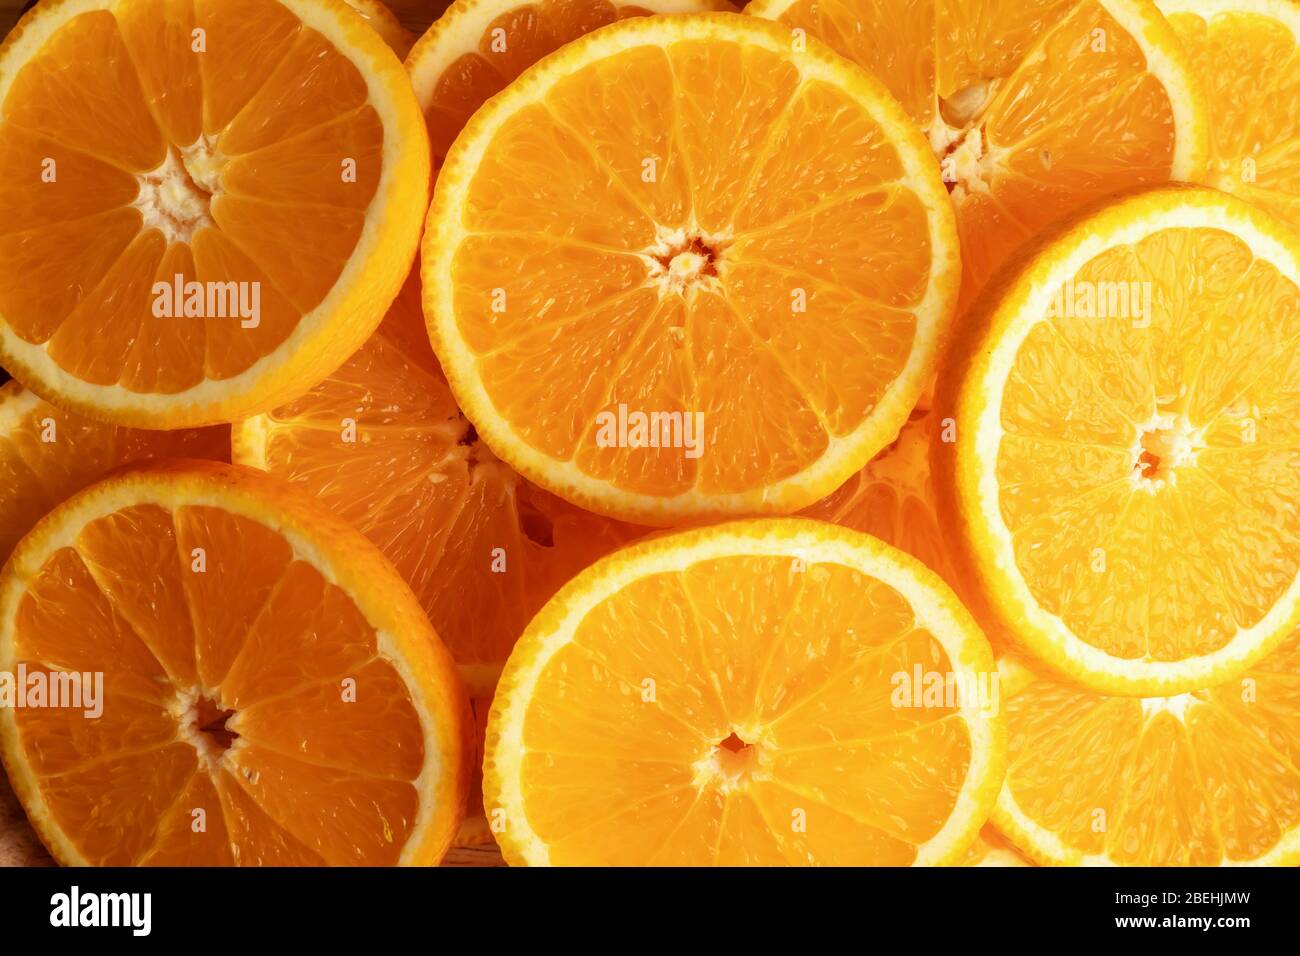 Fondos de vista superior y textura de frutas de naranja cortadas en pedazos. El resultado es agrio o dulce. Contiene calcio, potasio, vitamina A y C. Foto de stock